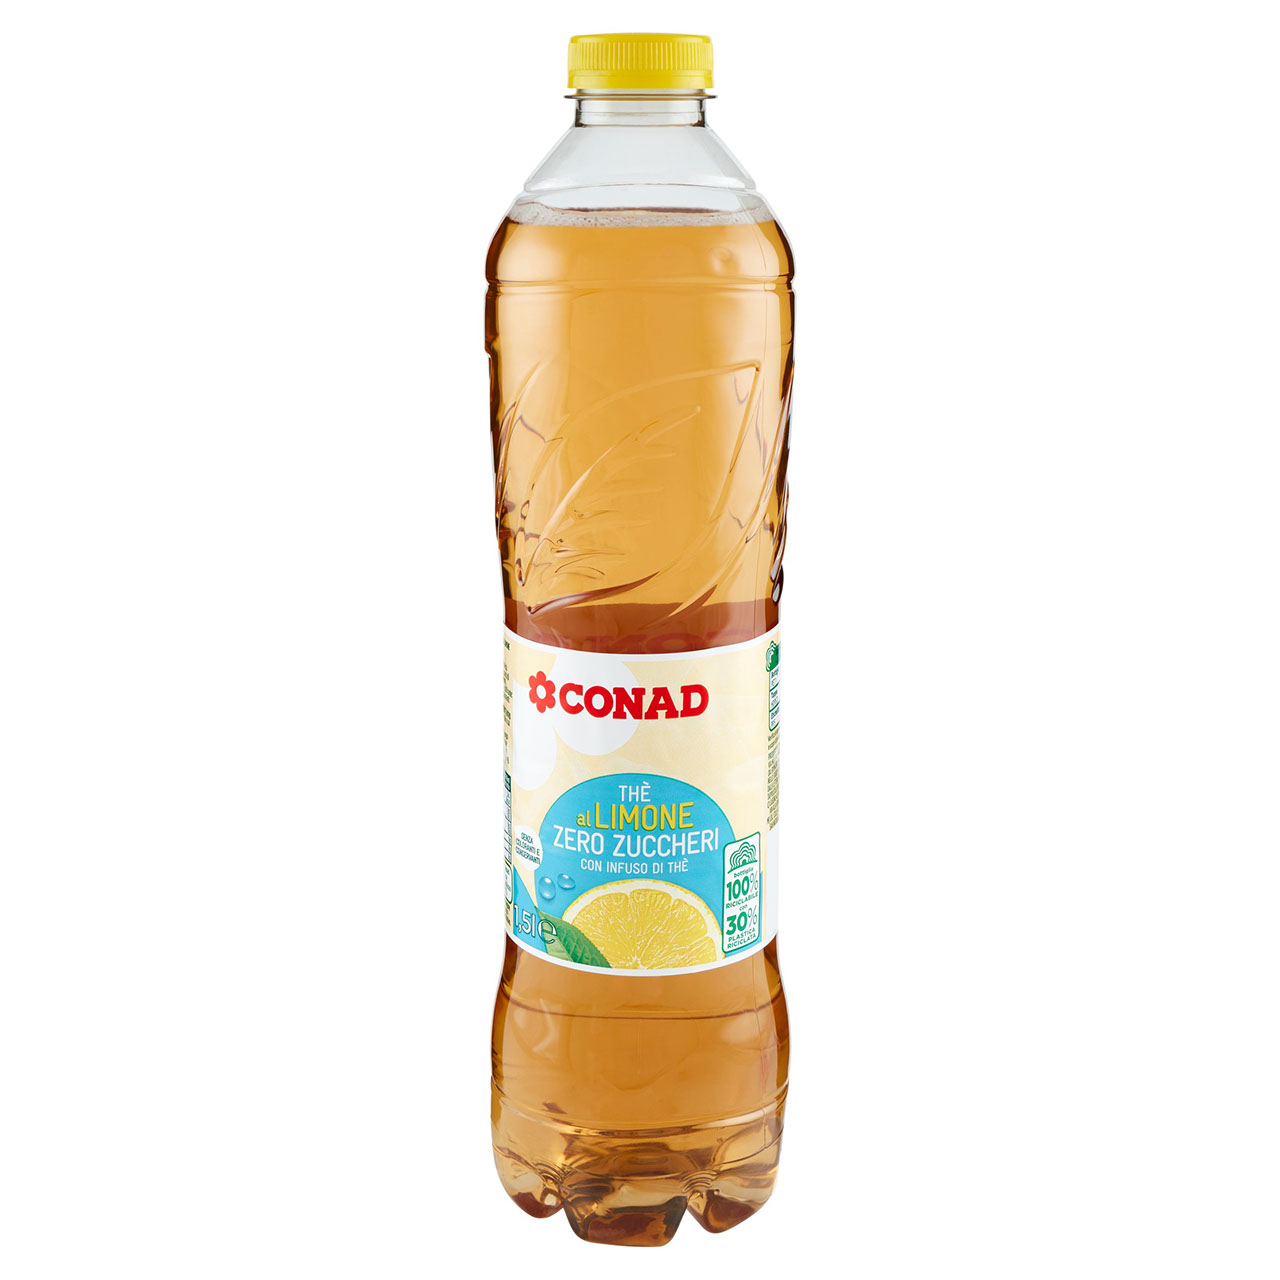 Thè al Limone Zero Zuccheri 1,5 l Conad online | Conad